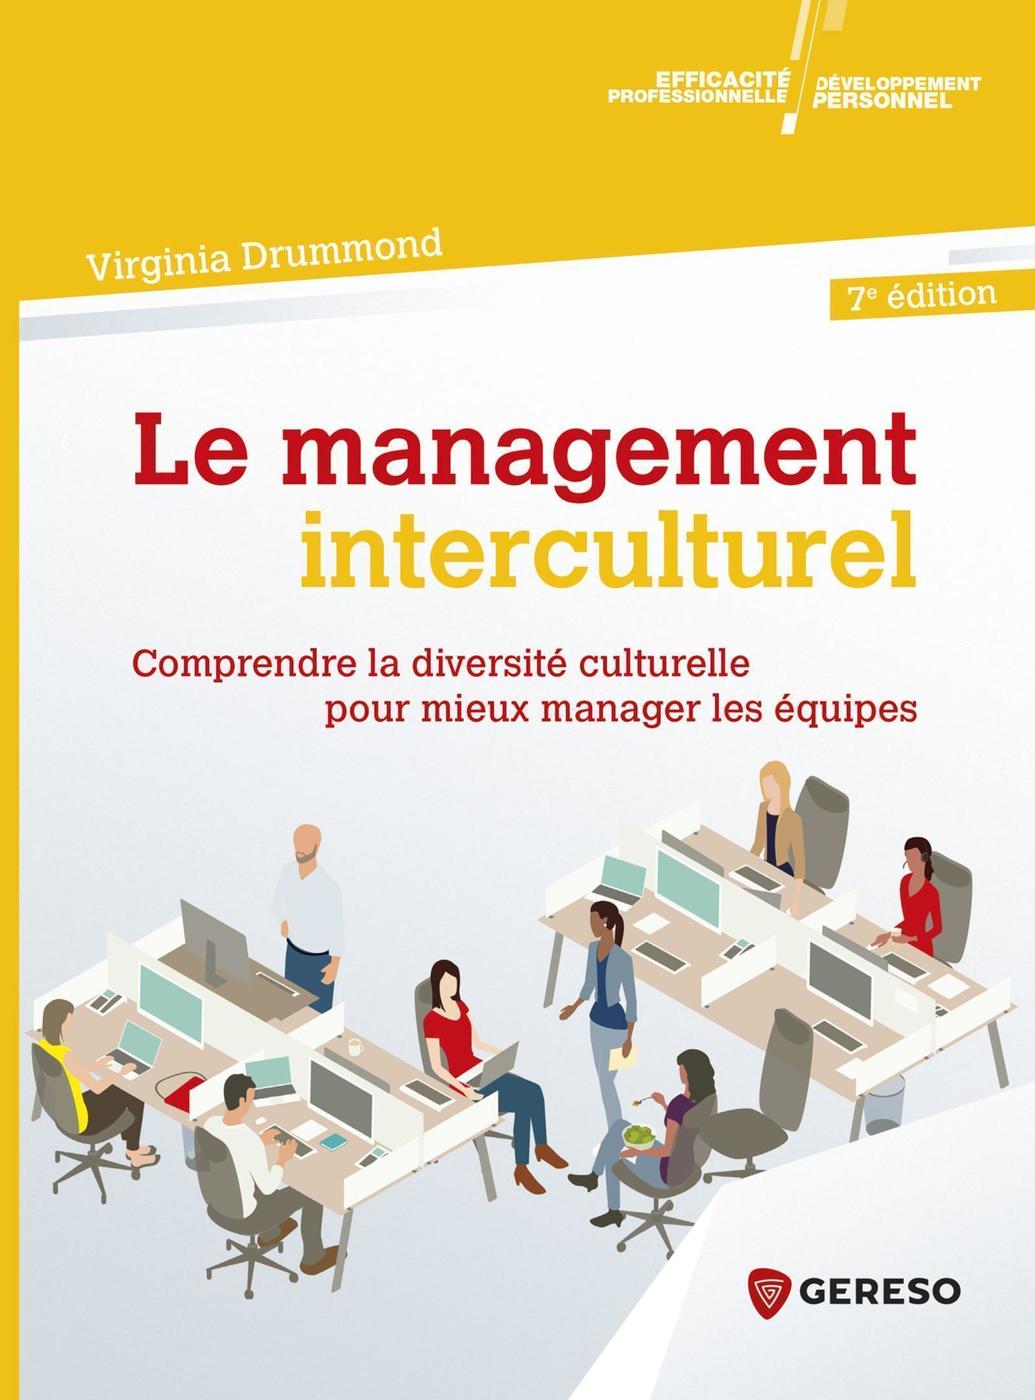 Le management interculturel  - Virginia Drummond 